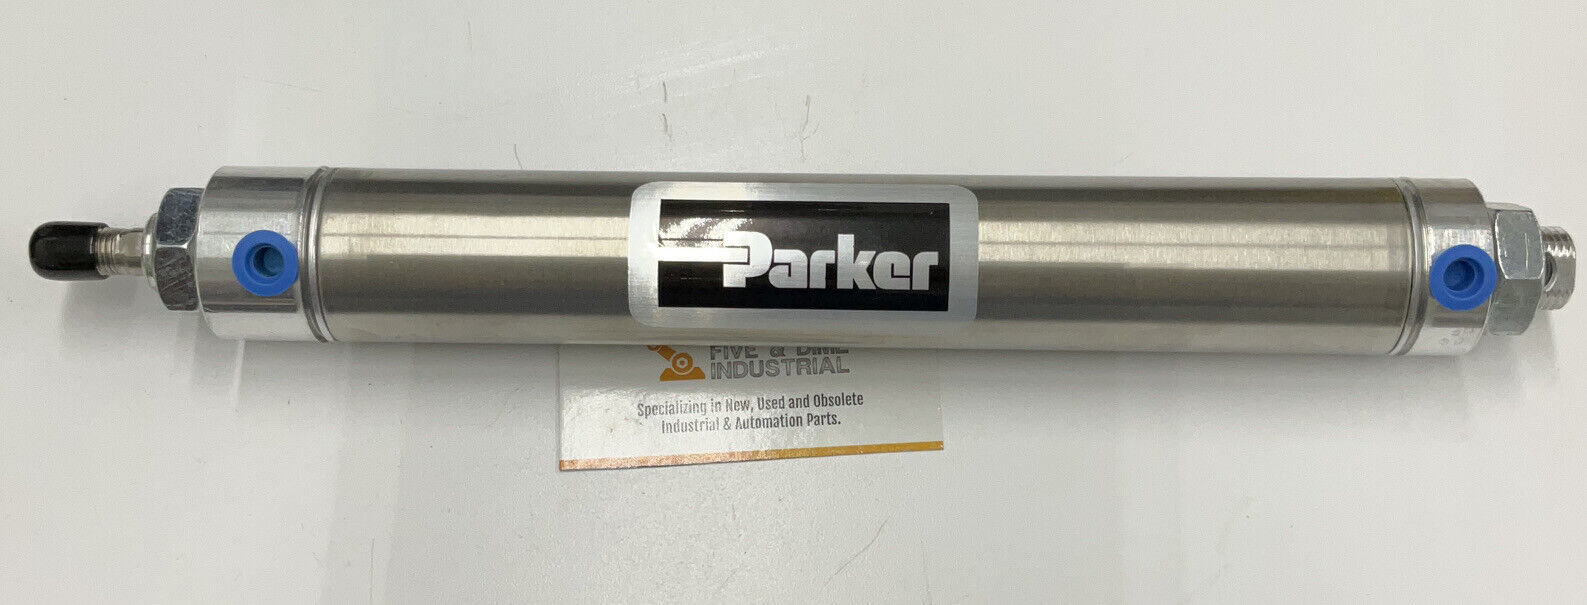 Parker 796388-0001-0817 / 1.5DXPSR08.00  250 PSI Pneumatic Air Cylinder (CL154)